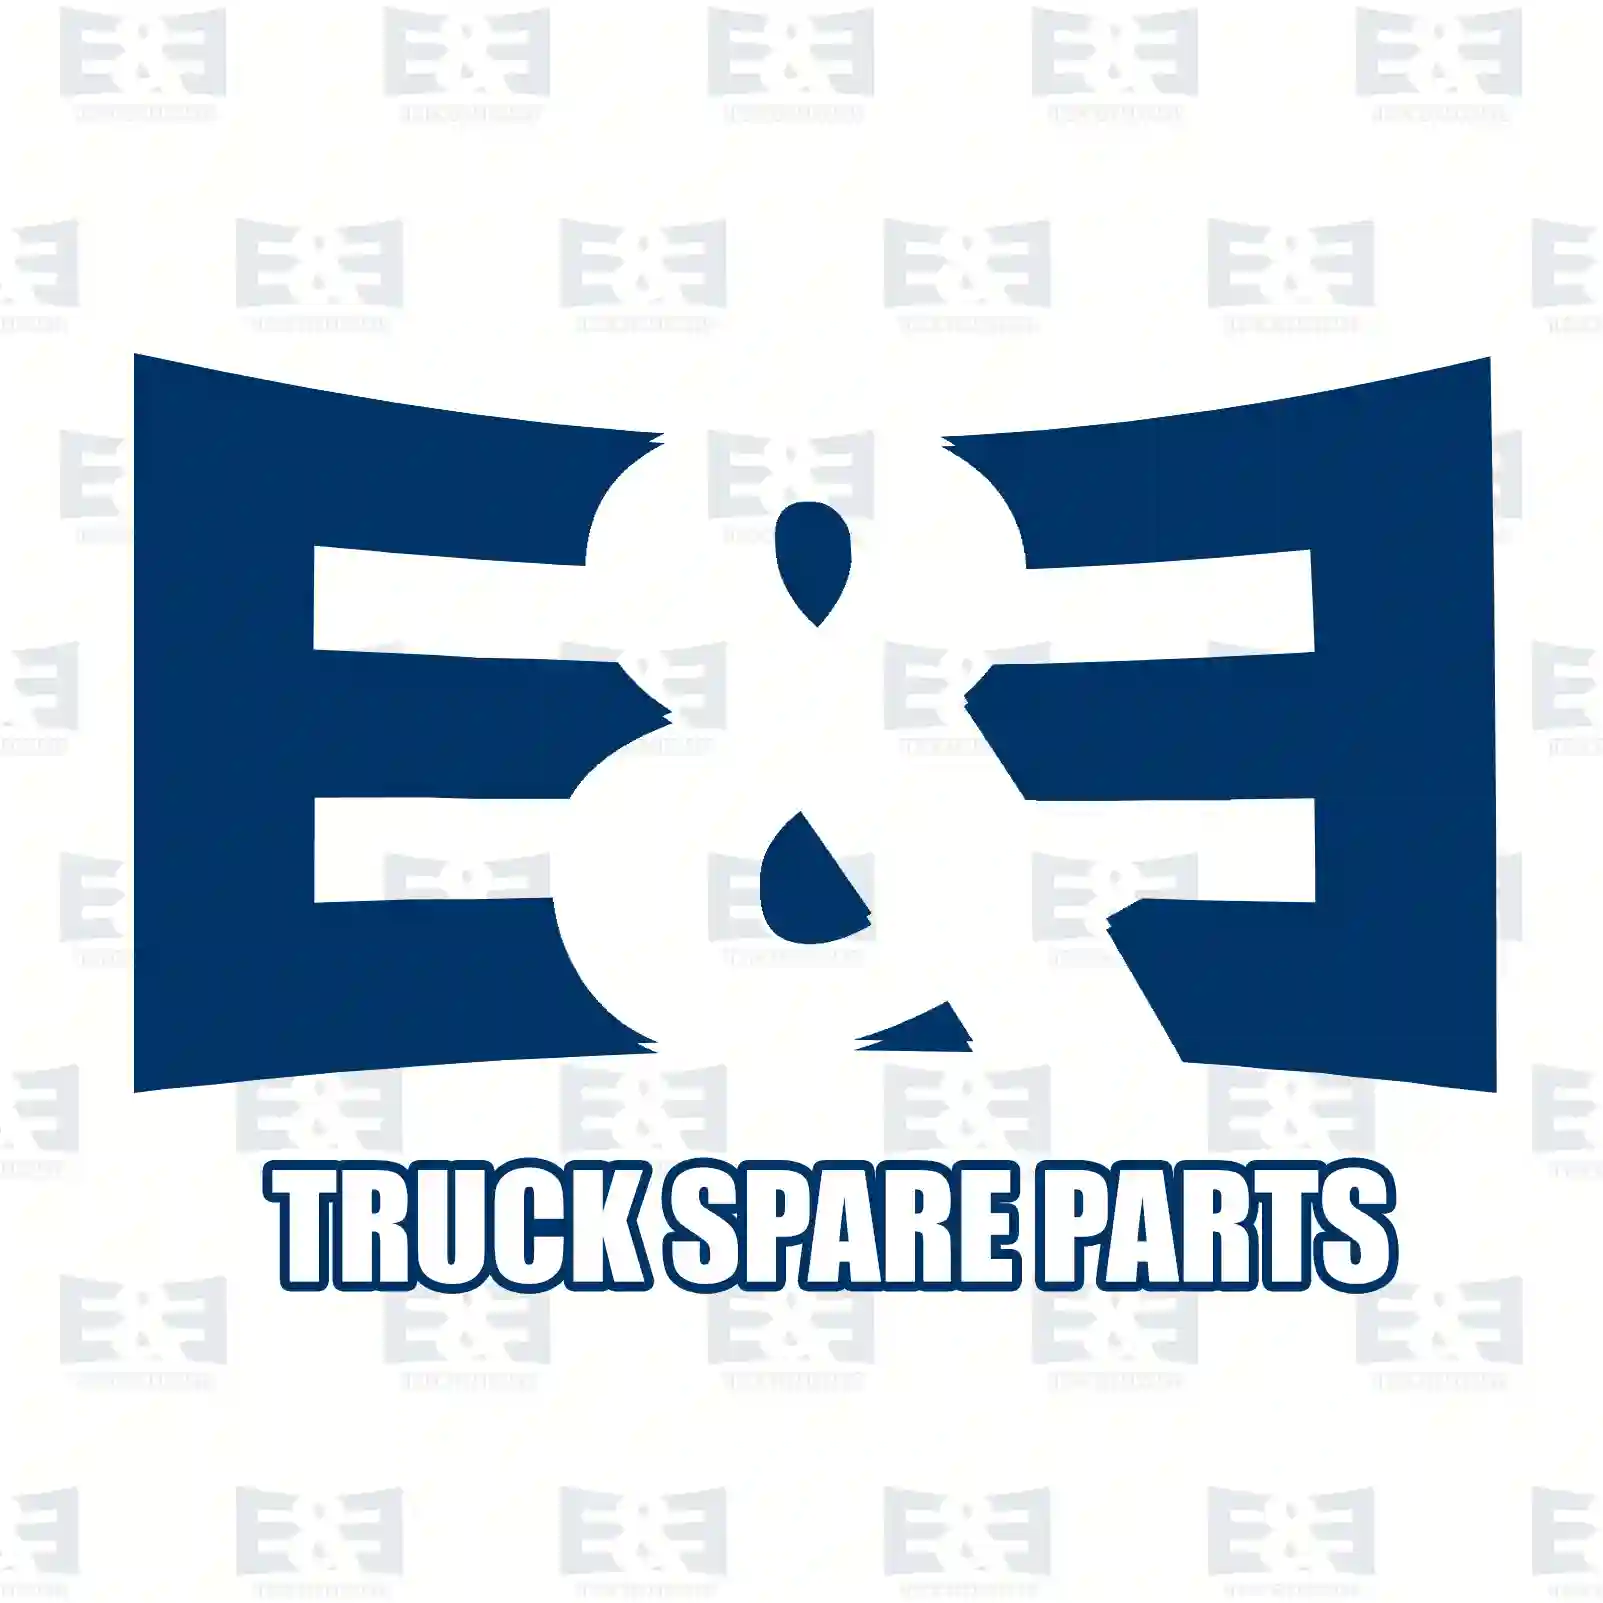 Oil seal, 2E2279420, 06562890389, , , ||  2E2279420 E&E Truck Spare Parts | Truck Spare Parts, Auotomotive Spare Parts Oil seal, 2E2279420, 06562890389, , , ||  2E2279420 E&E Truck Spare Parts | Truck Spare Parts, Auotomotive Spare Parts